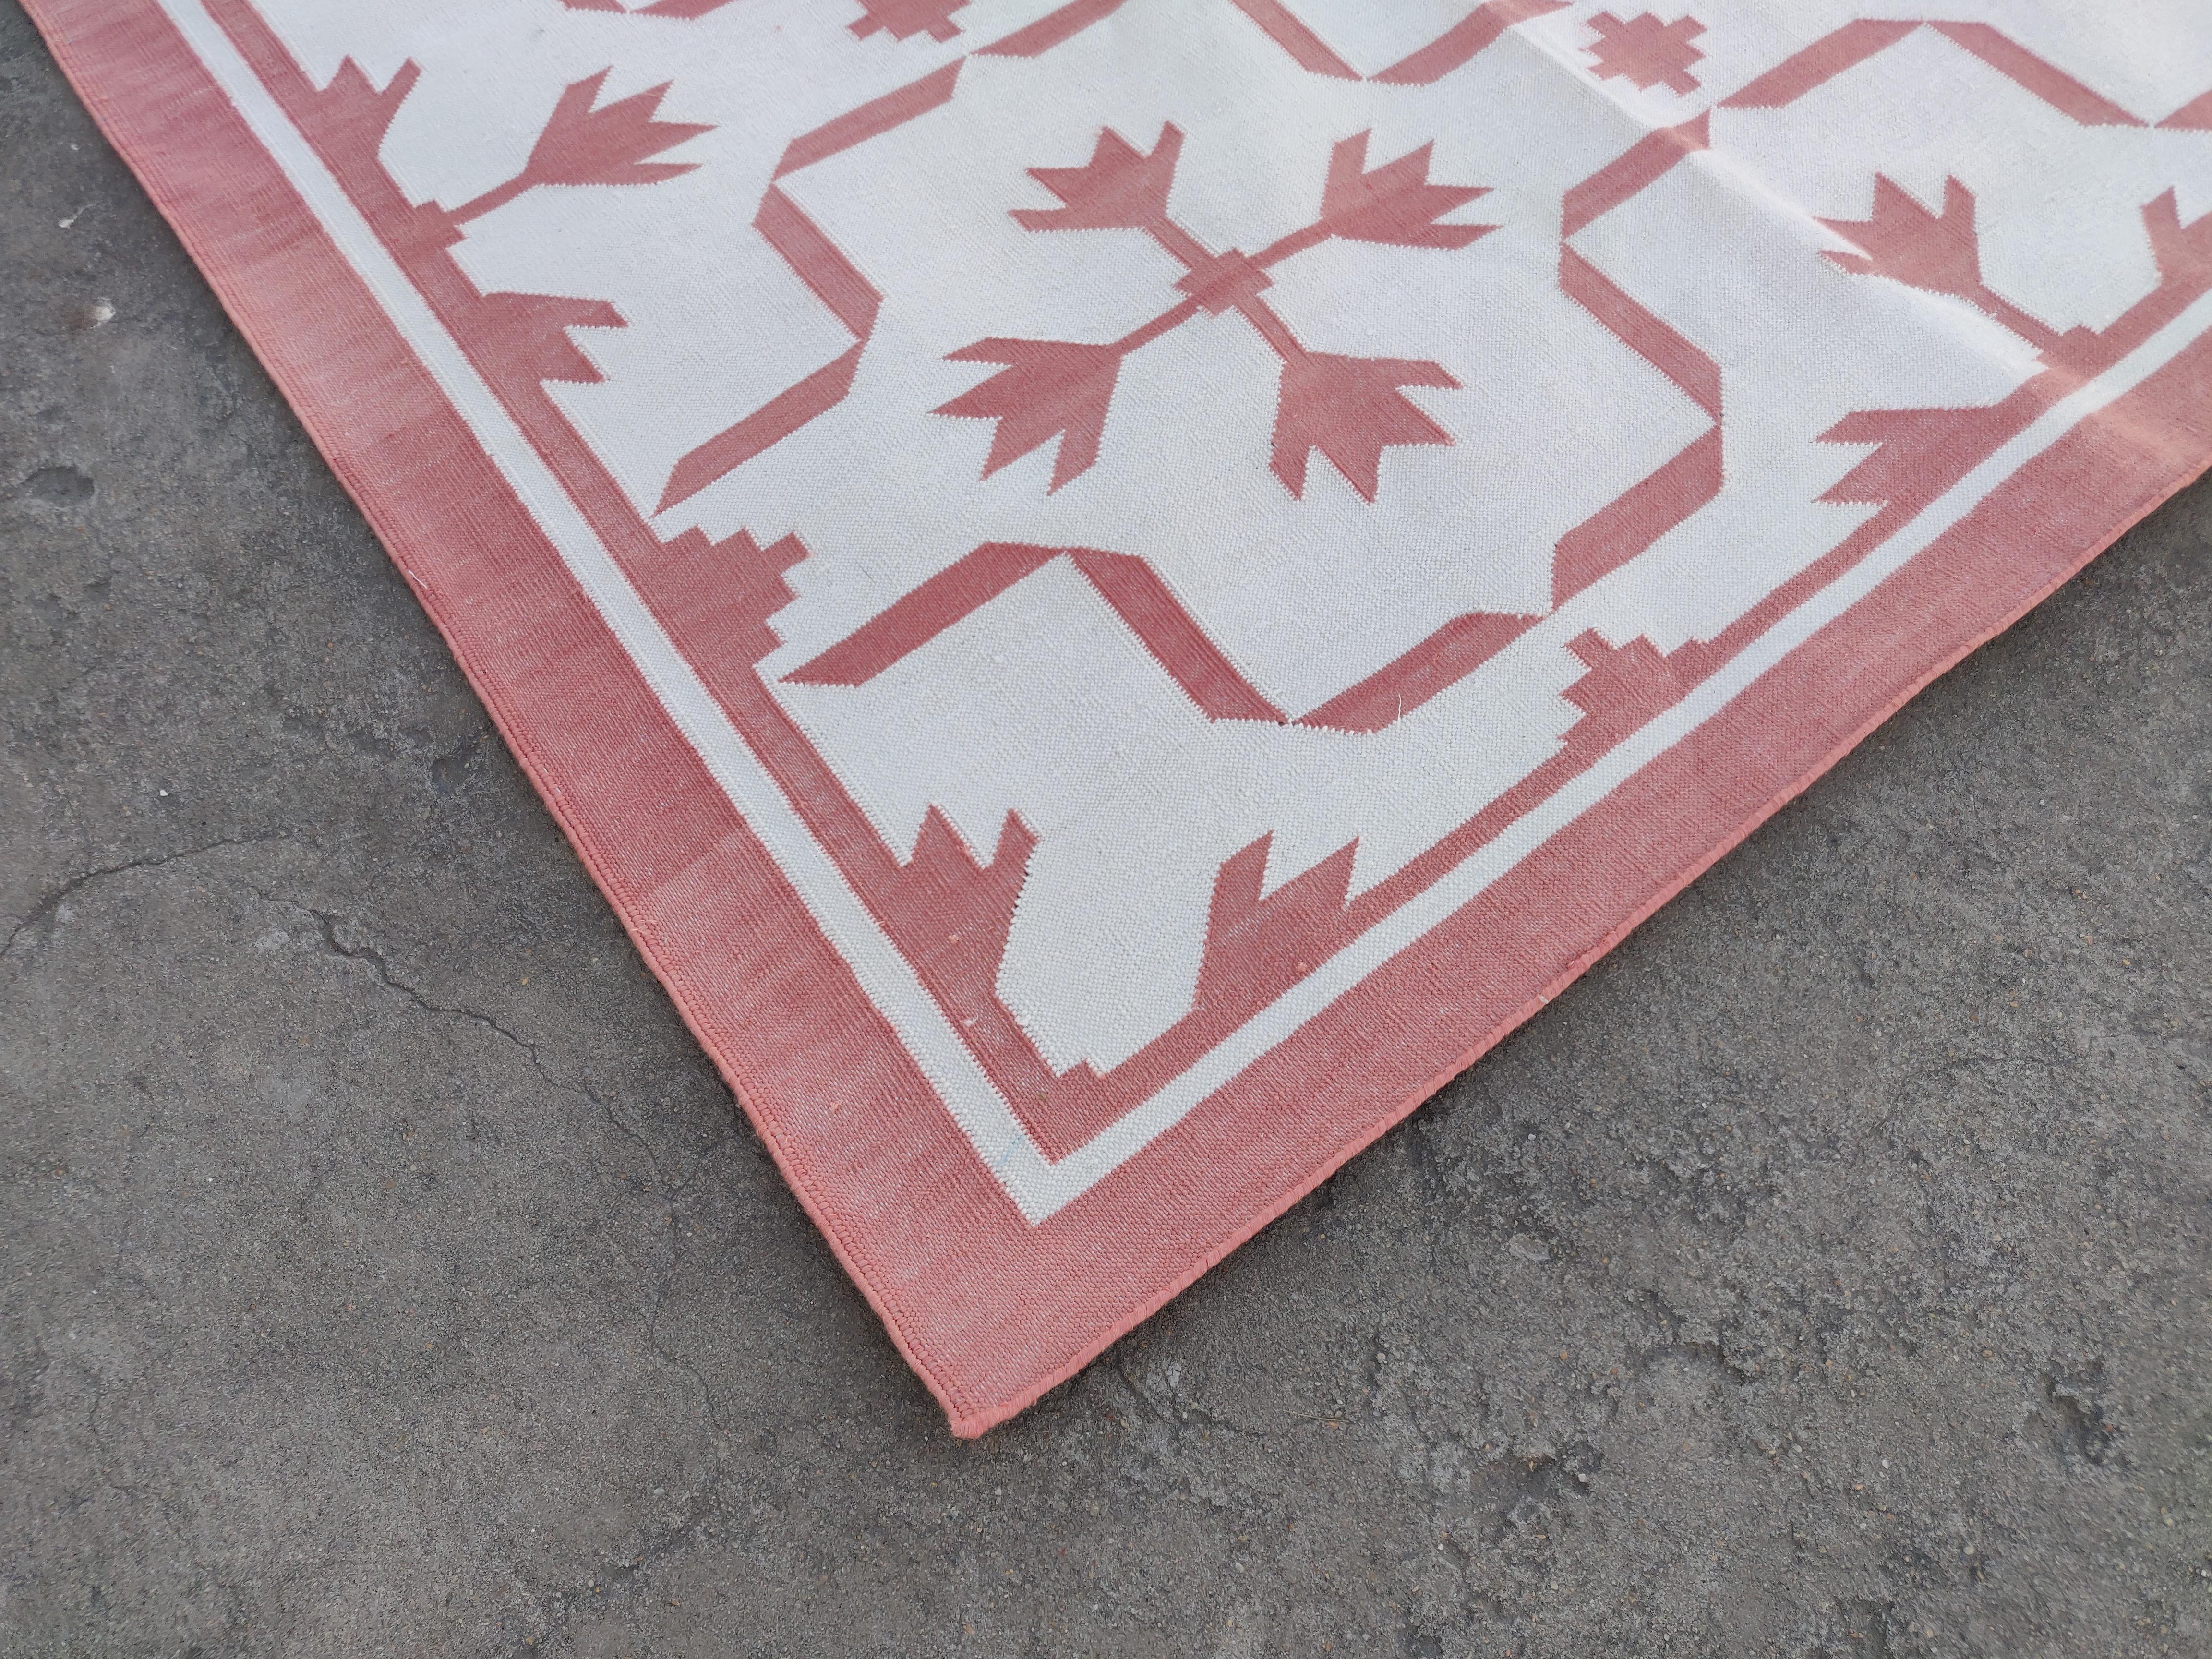 Baumwolle pflanzlich gefärbt Reversible Rose rosa und weiß Blatt gemusterten indischen Teppich - 8'x10'
Diese speziellen flachgewebten Dhurries werden aus 15-fachem Garn aus 100% Baumwolle handgewebt. Aufgrund der speziellen Fertigungstechniken, die